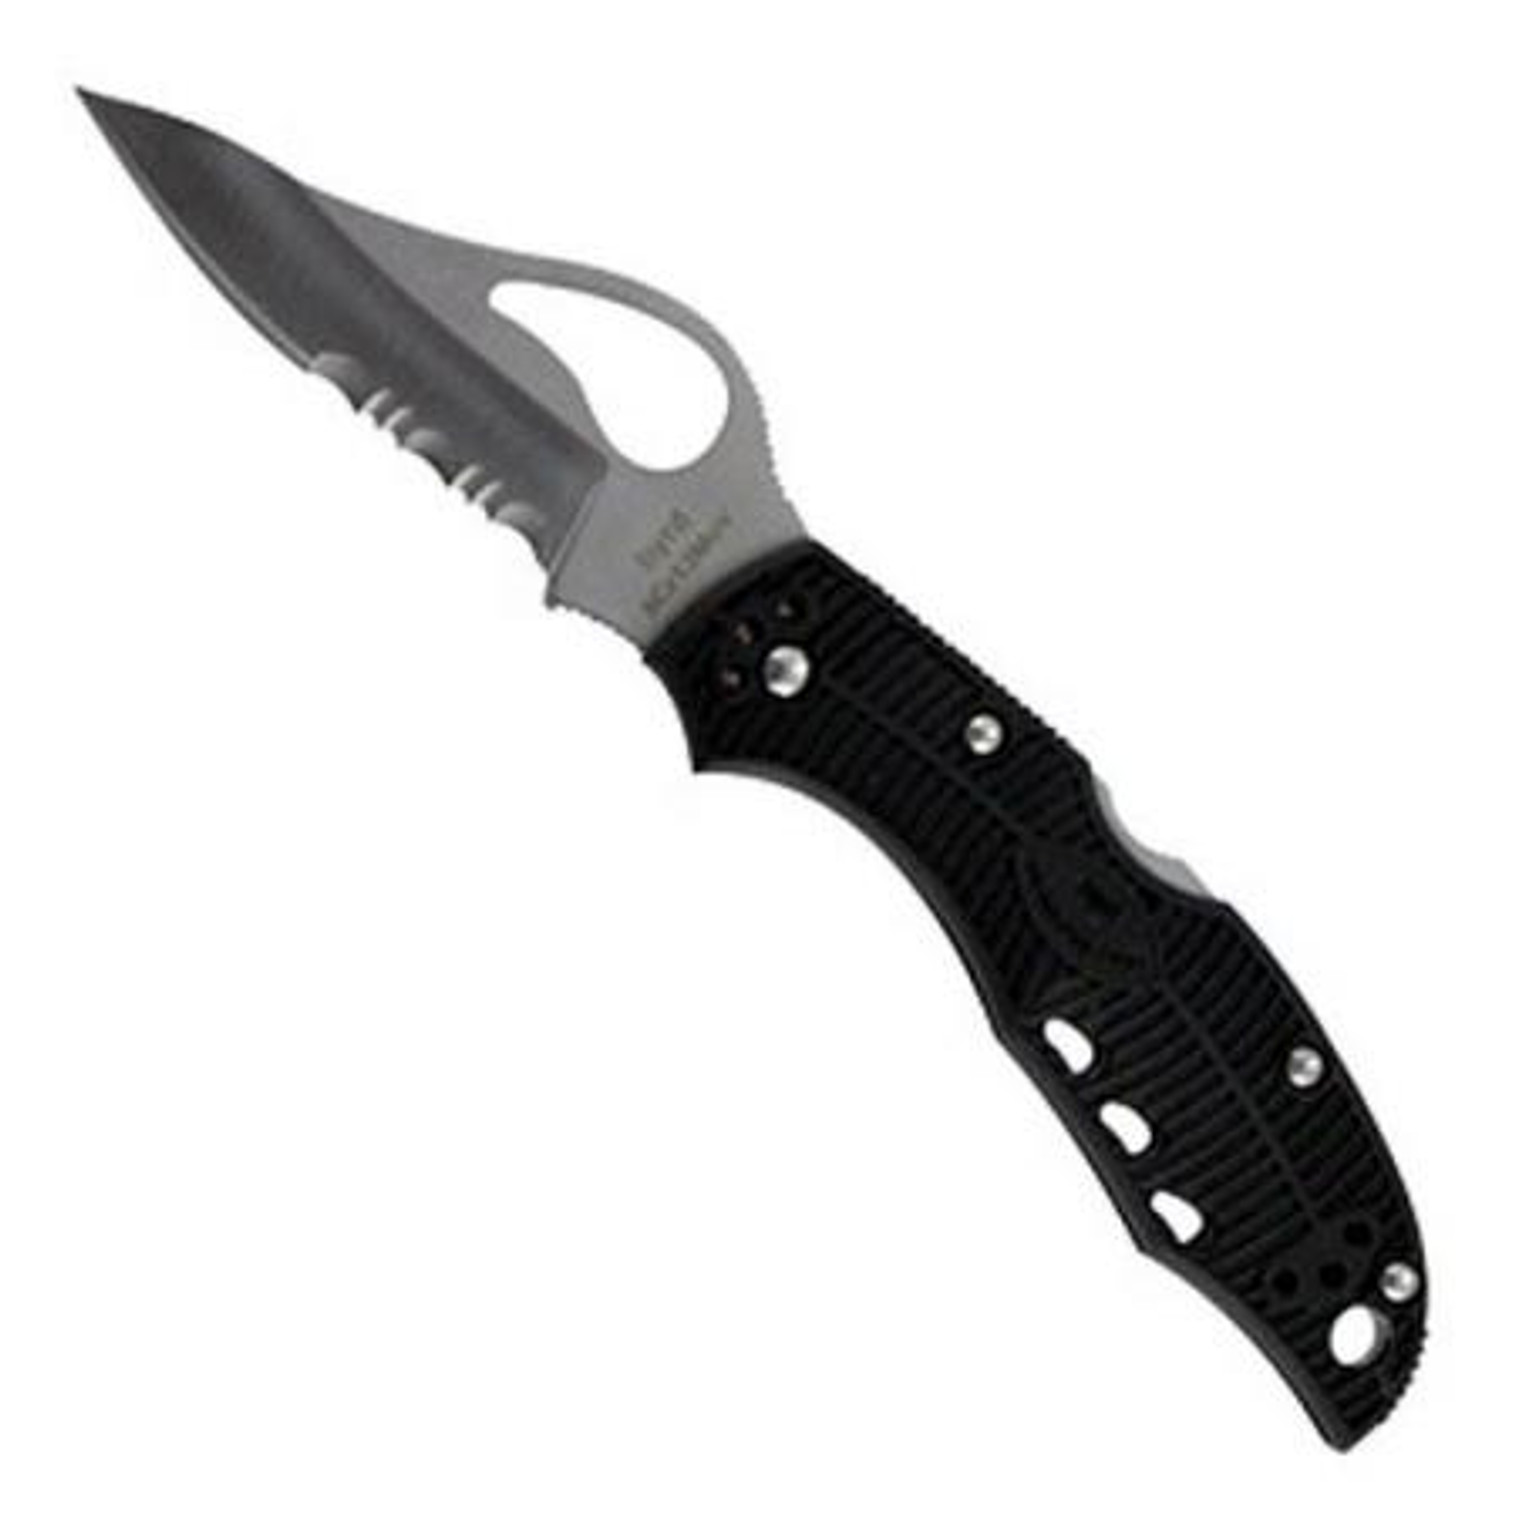 Spyderco Meadowlark Folding Knife - 50/50 Edge